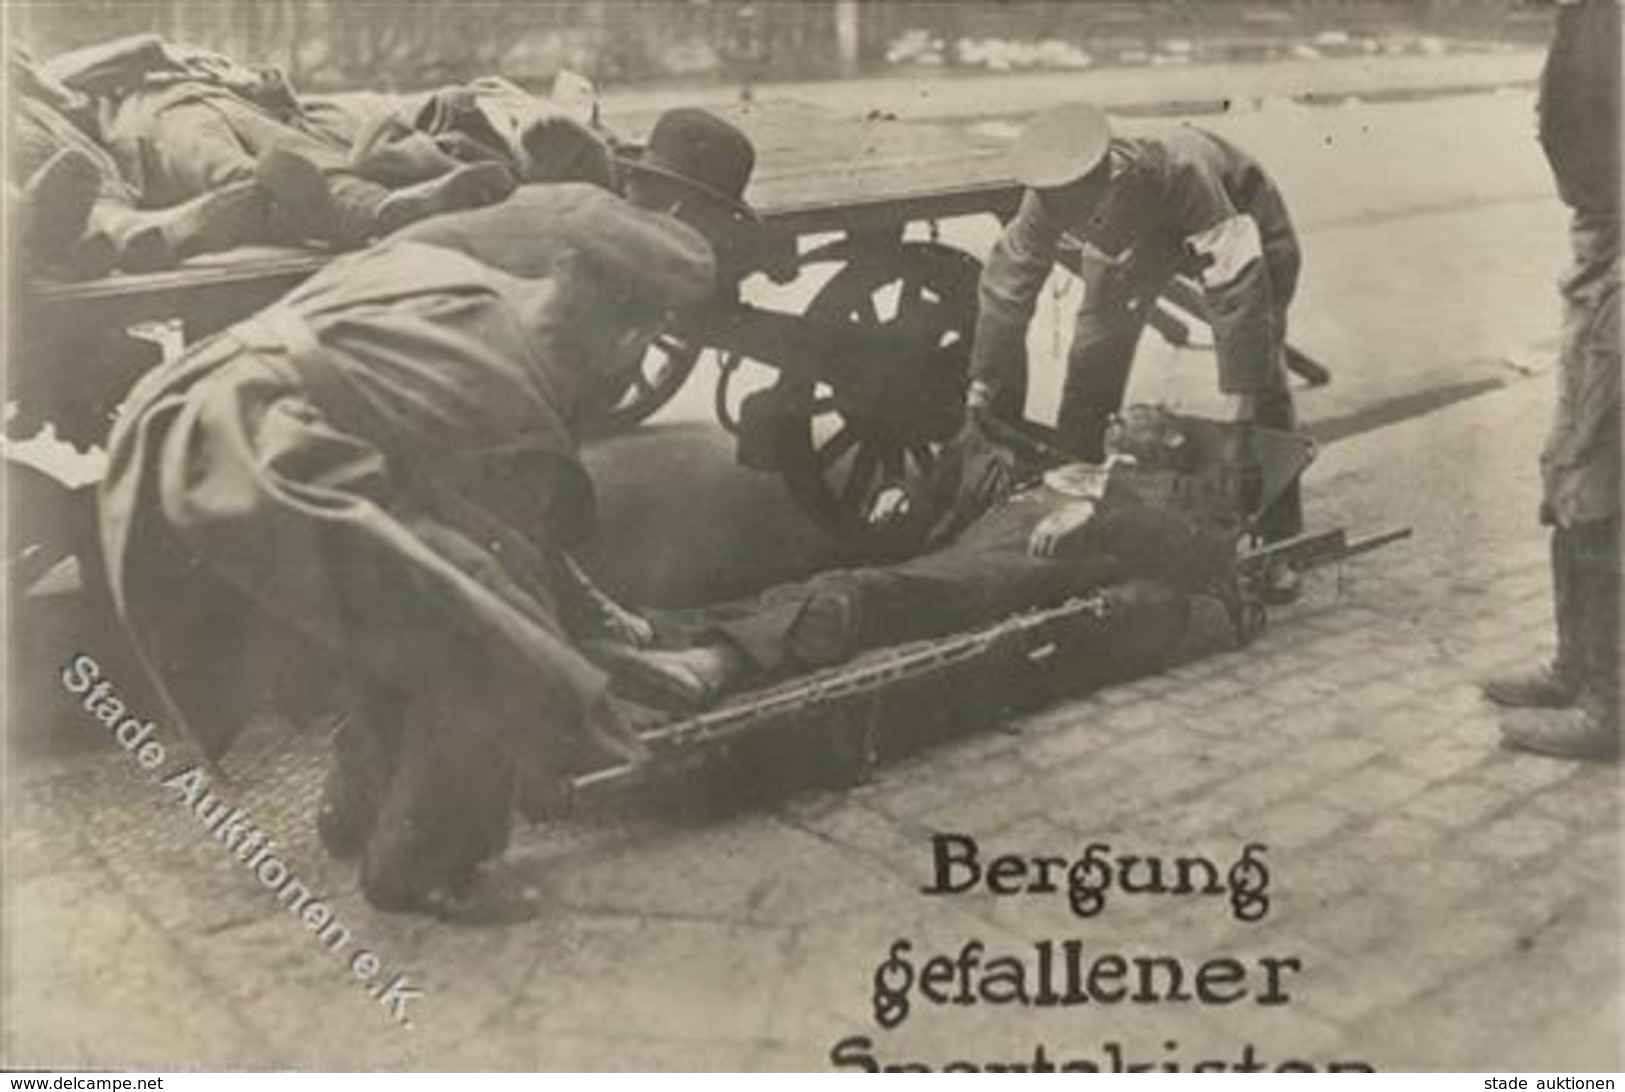 REVOLUTION MÜNCHEN 1919 - Bergung Gefallener SPARTAKISTEN (keine Ak) II - Krieg